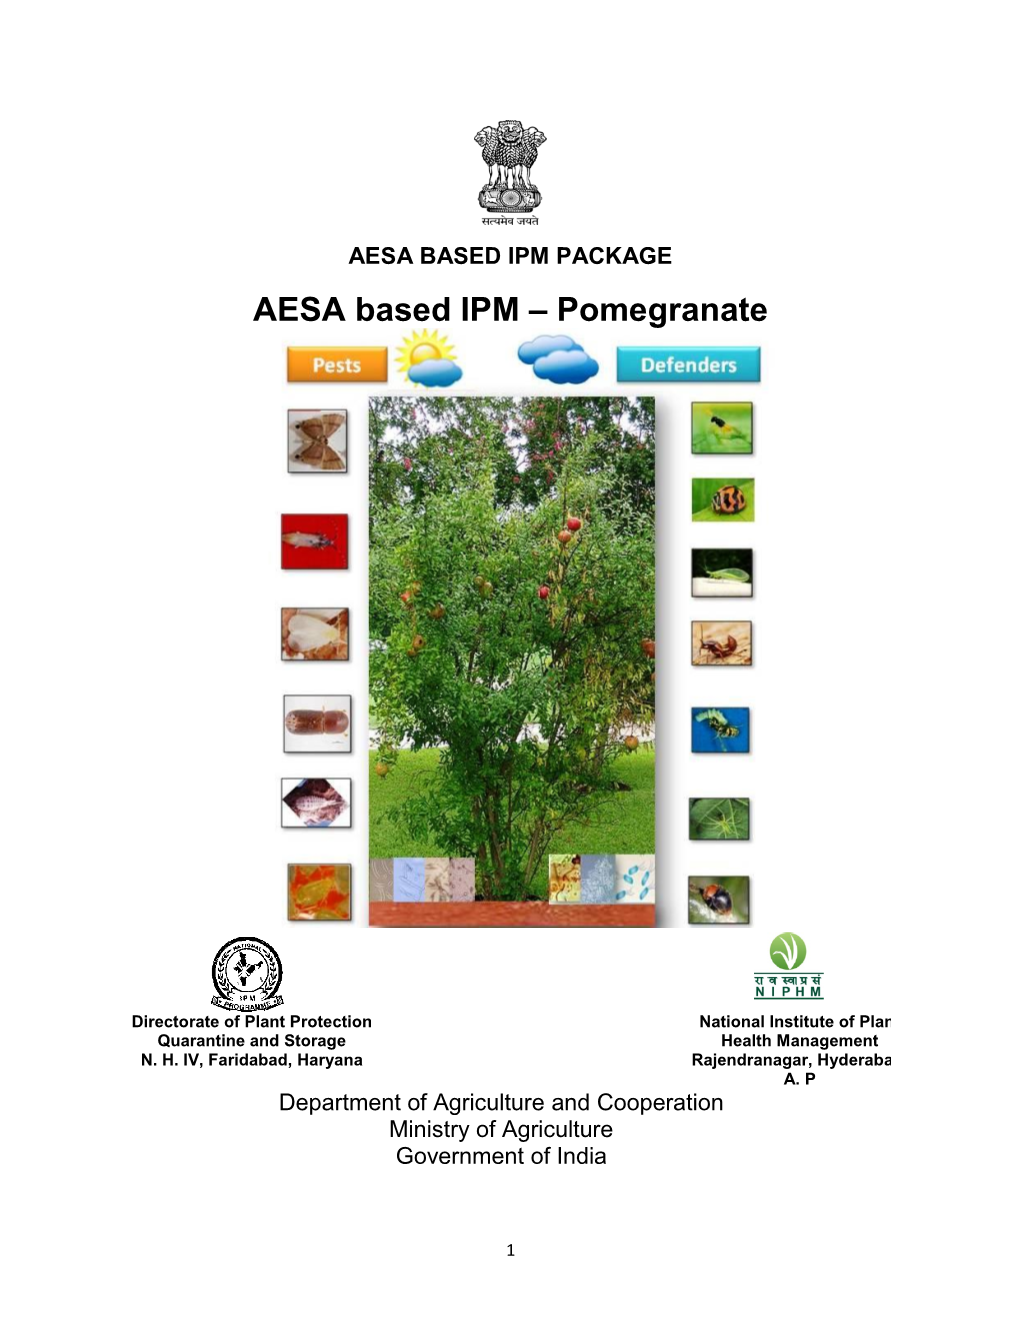 AESA Based IPM Pomegranate